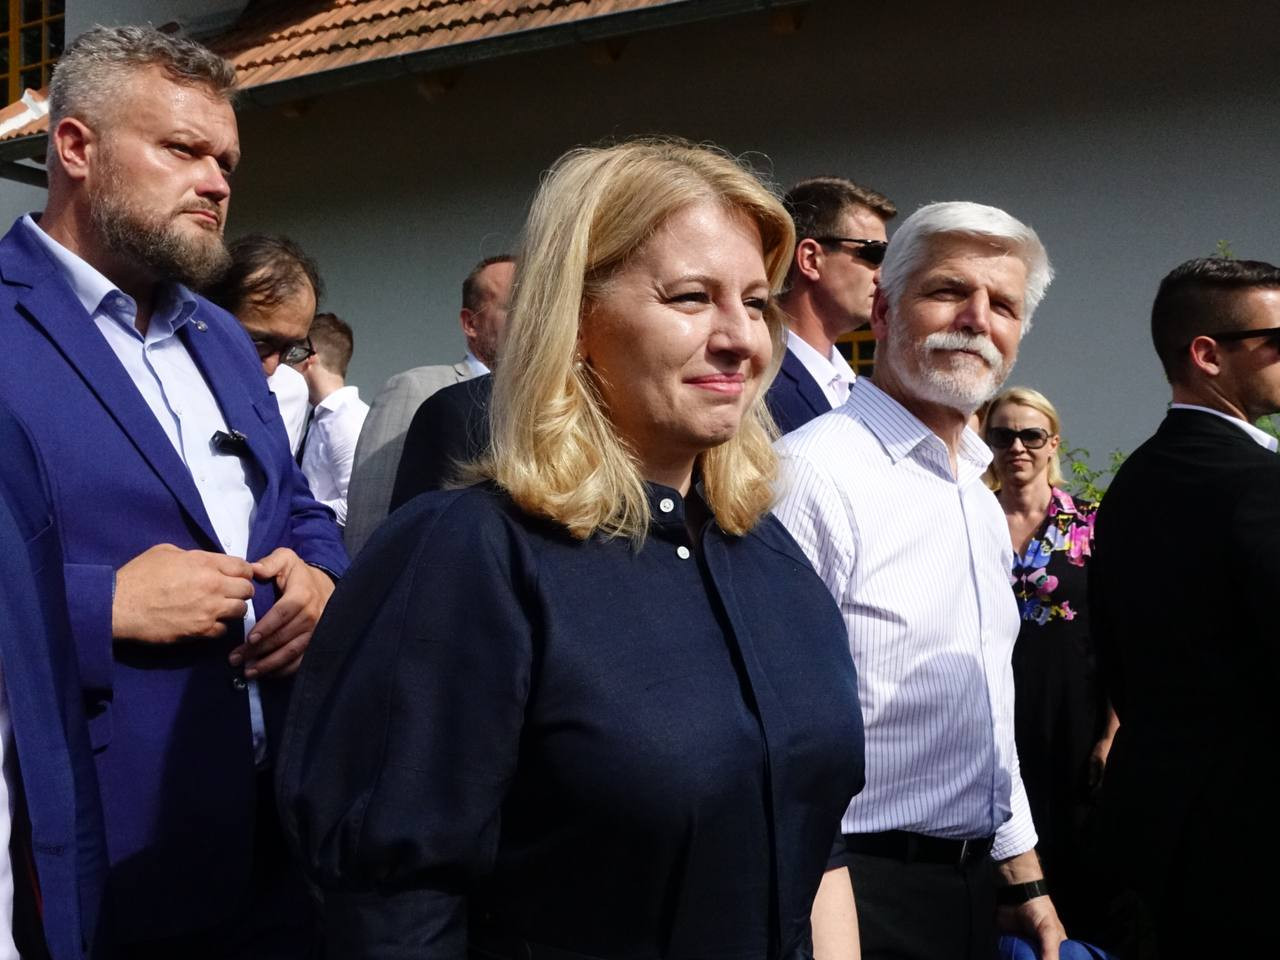 Prezidenti Petr Pavel a Zuzana Čaputová přicházejí na diskuzi na zahradě vily Tugendhat. Foto: Marie Dámková